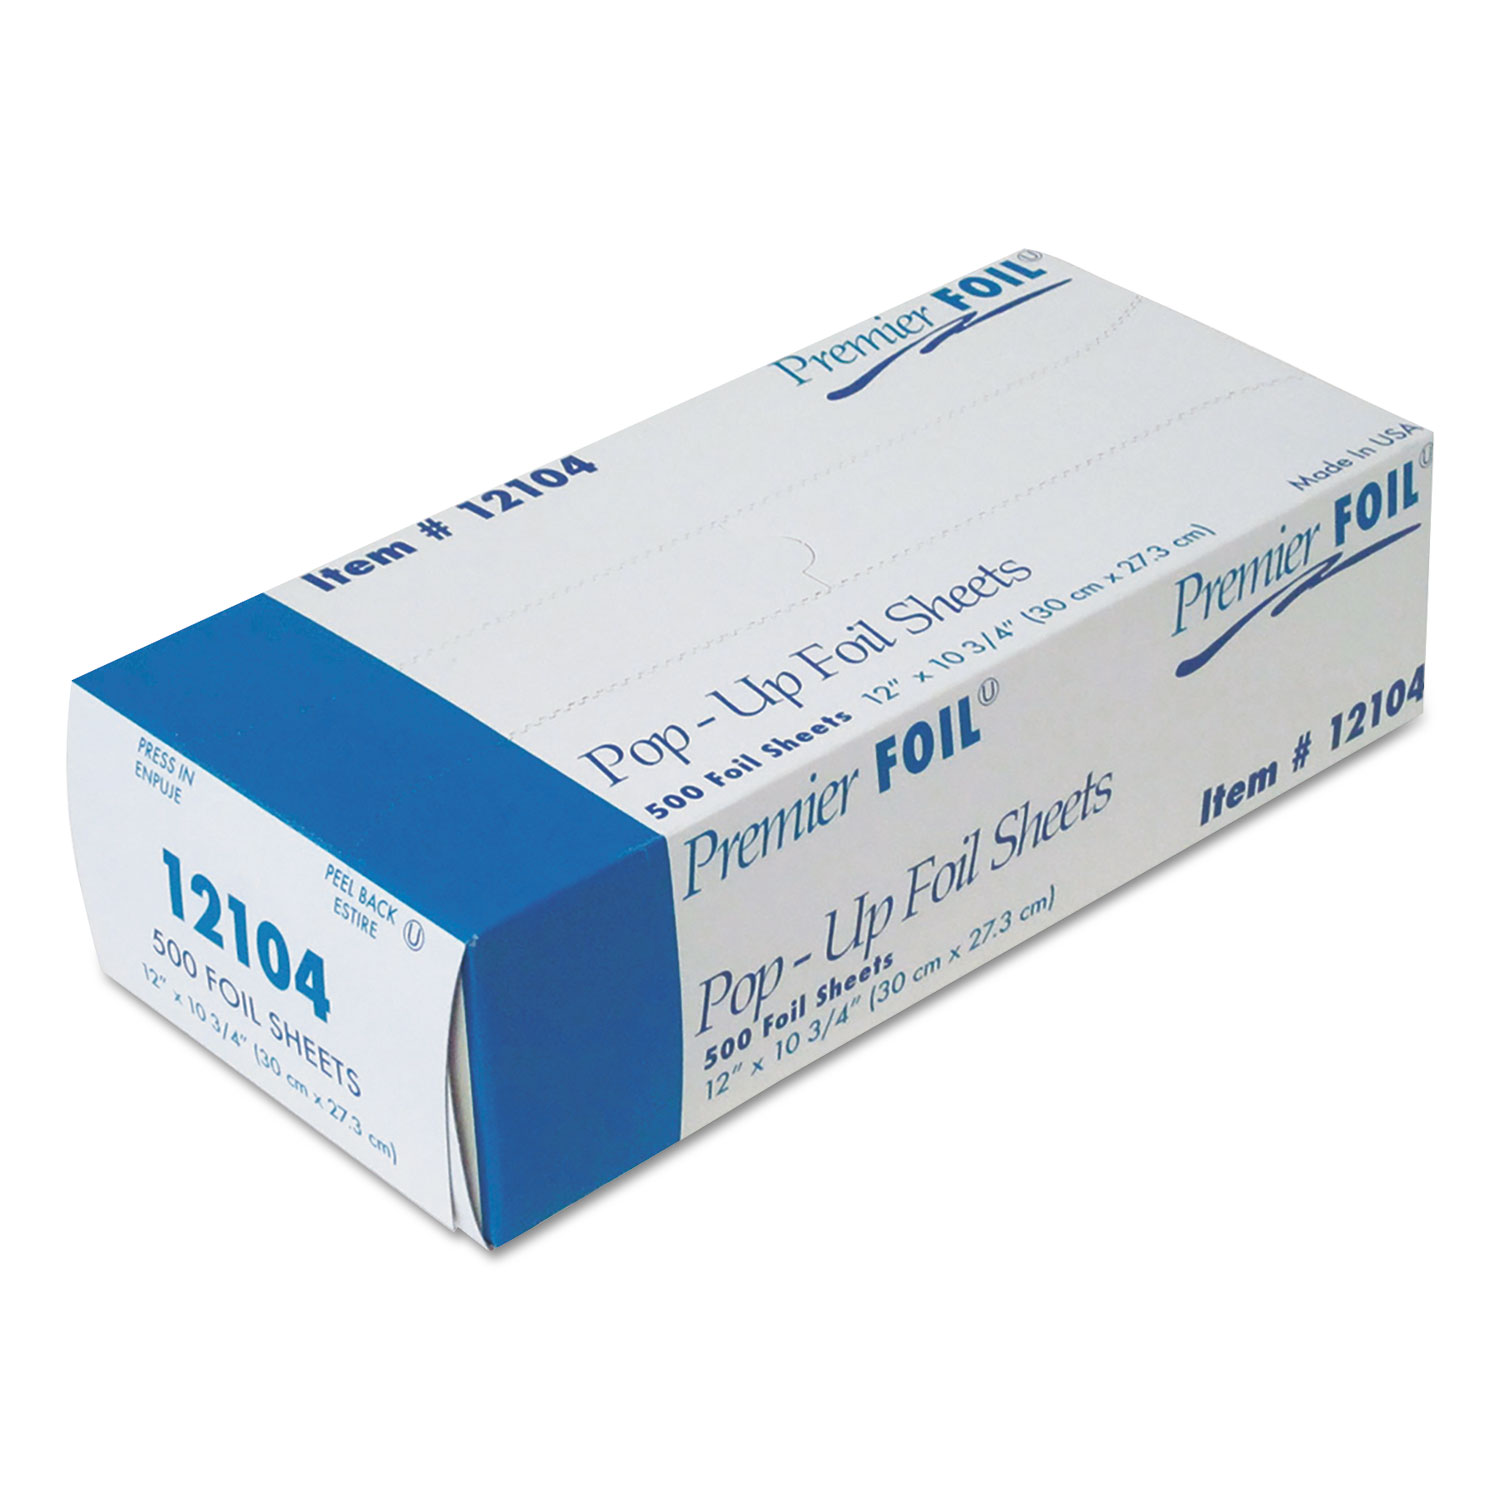  Durable Packaging 12104 Premier Pop-Up Aluminum Foil Sheets, 12 x 10 3/4, 500/Box, 6 Boxes/Carton (DPK12104) 